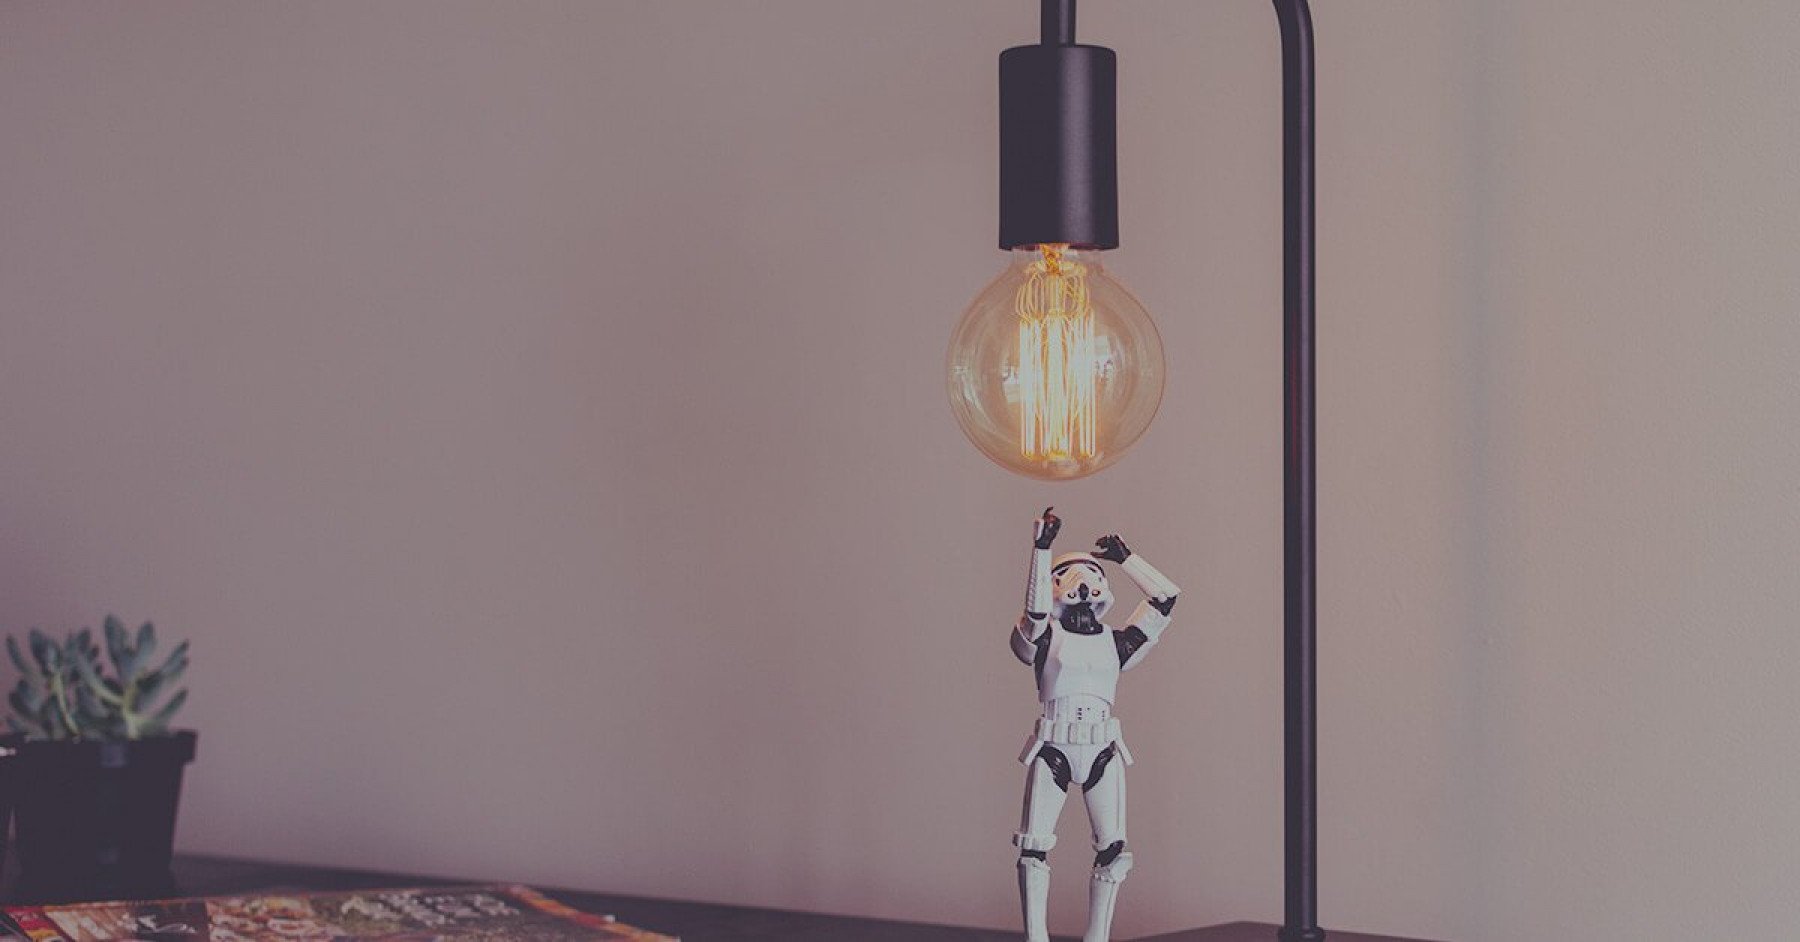 Bord med en bordslampa och en miniatyr av en storm trooper från Star Wars